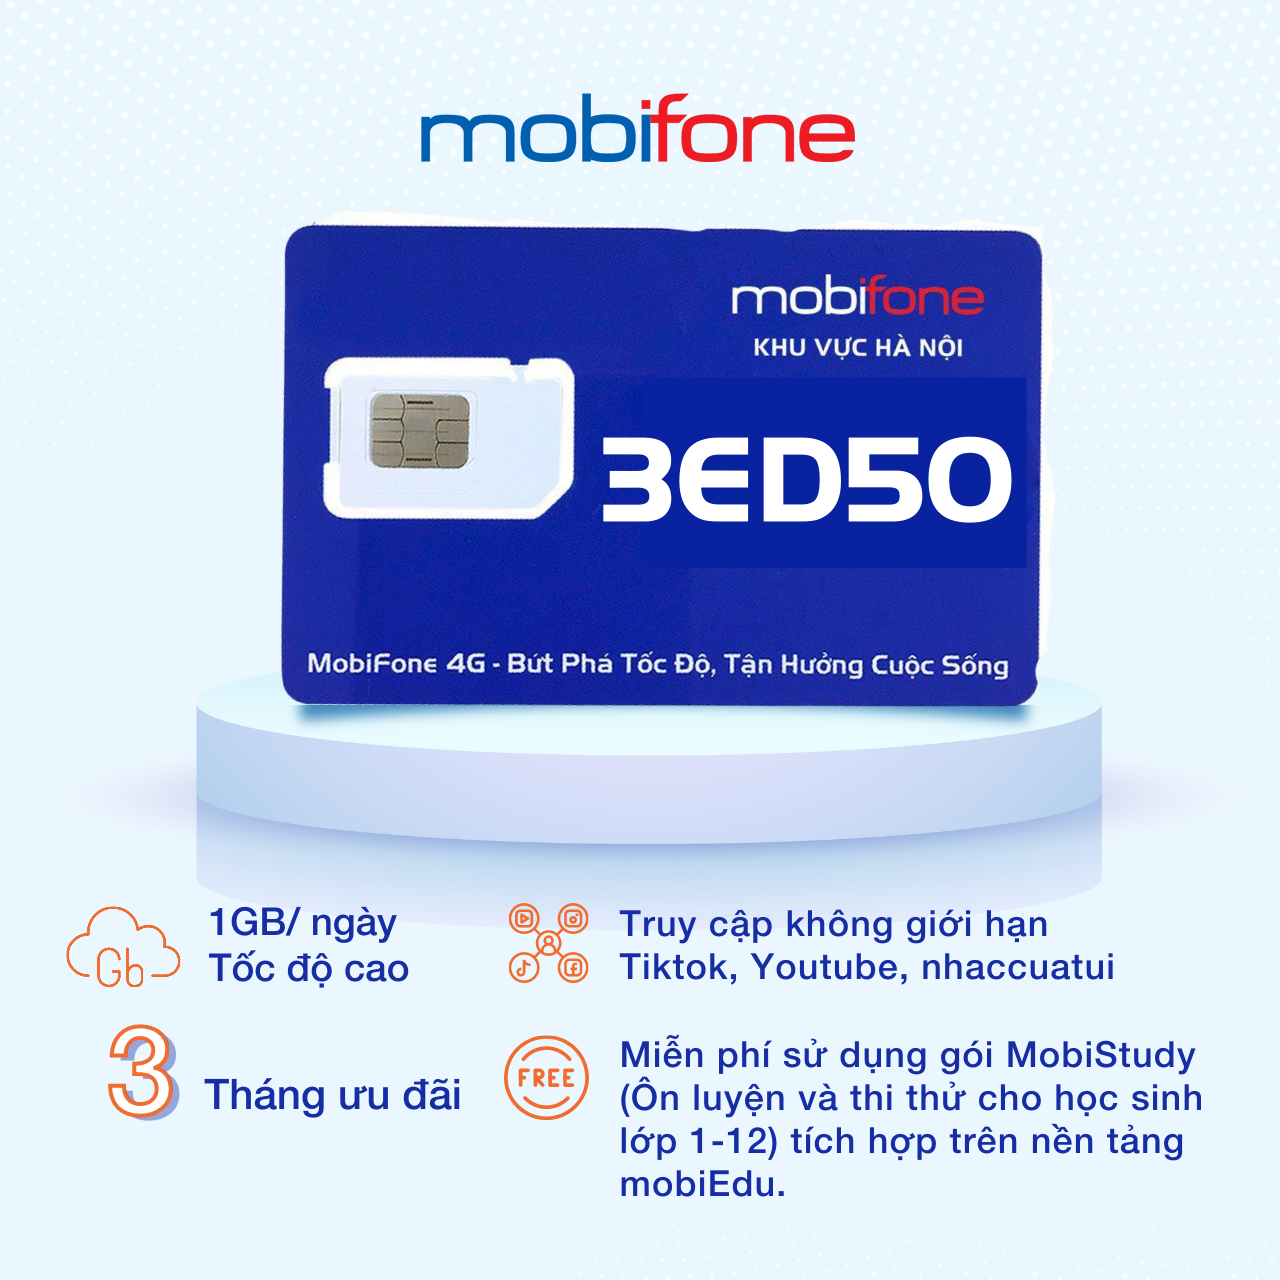 Sim trạng nguyên MobiFone chính hãng 3ED50 - Chuyên luyện thi